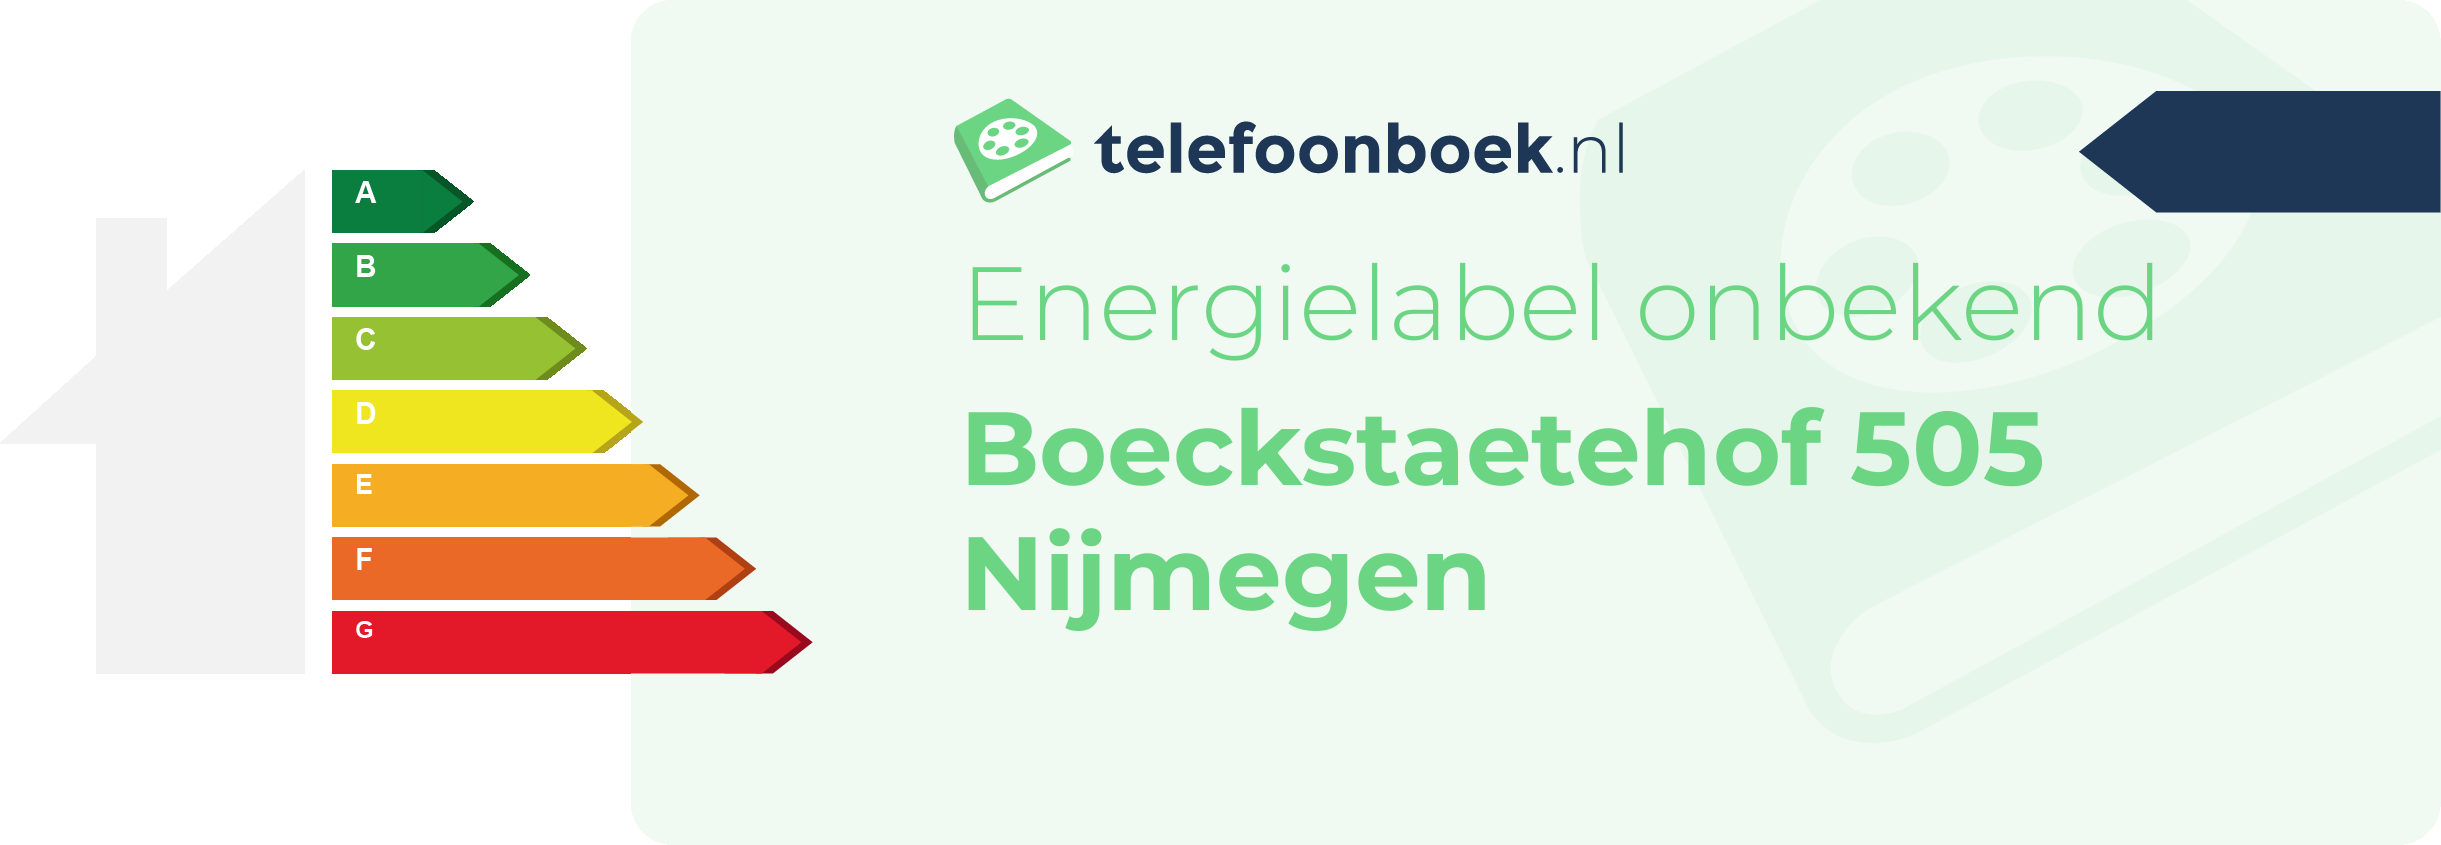 Energielabel Boeckstaetehof 505 Nijmegen